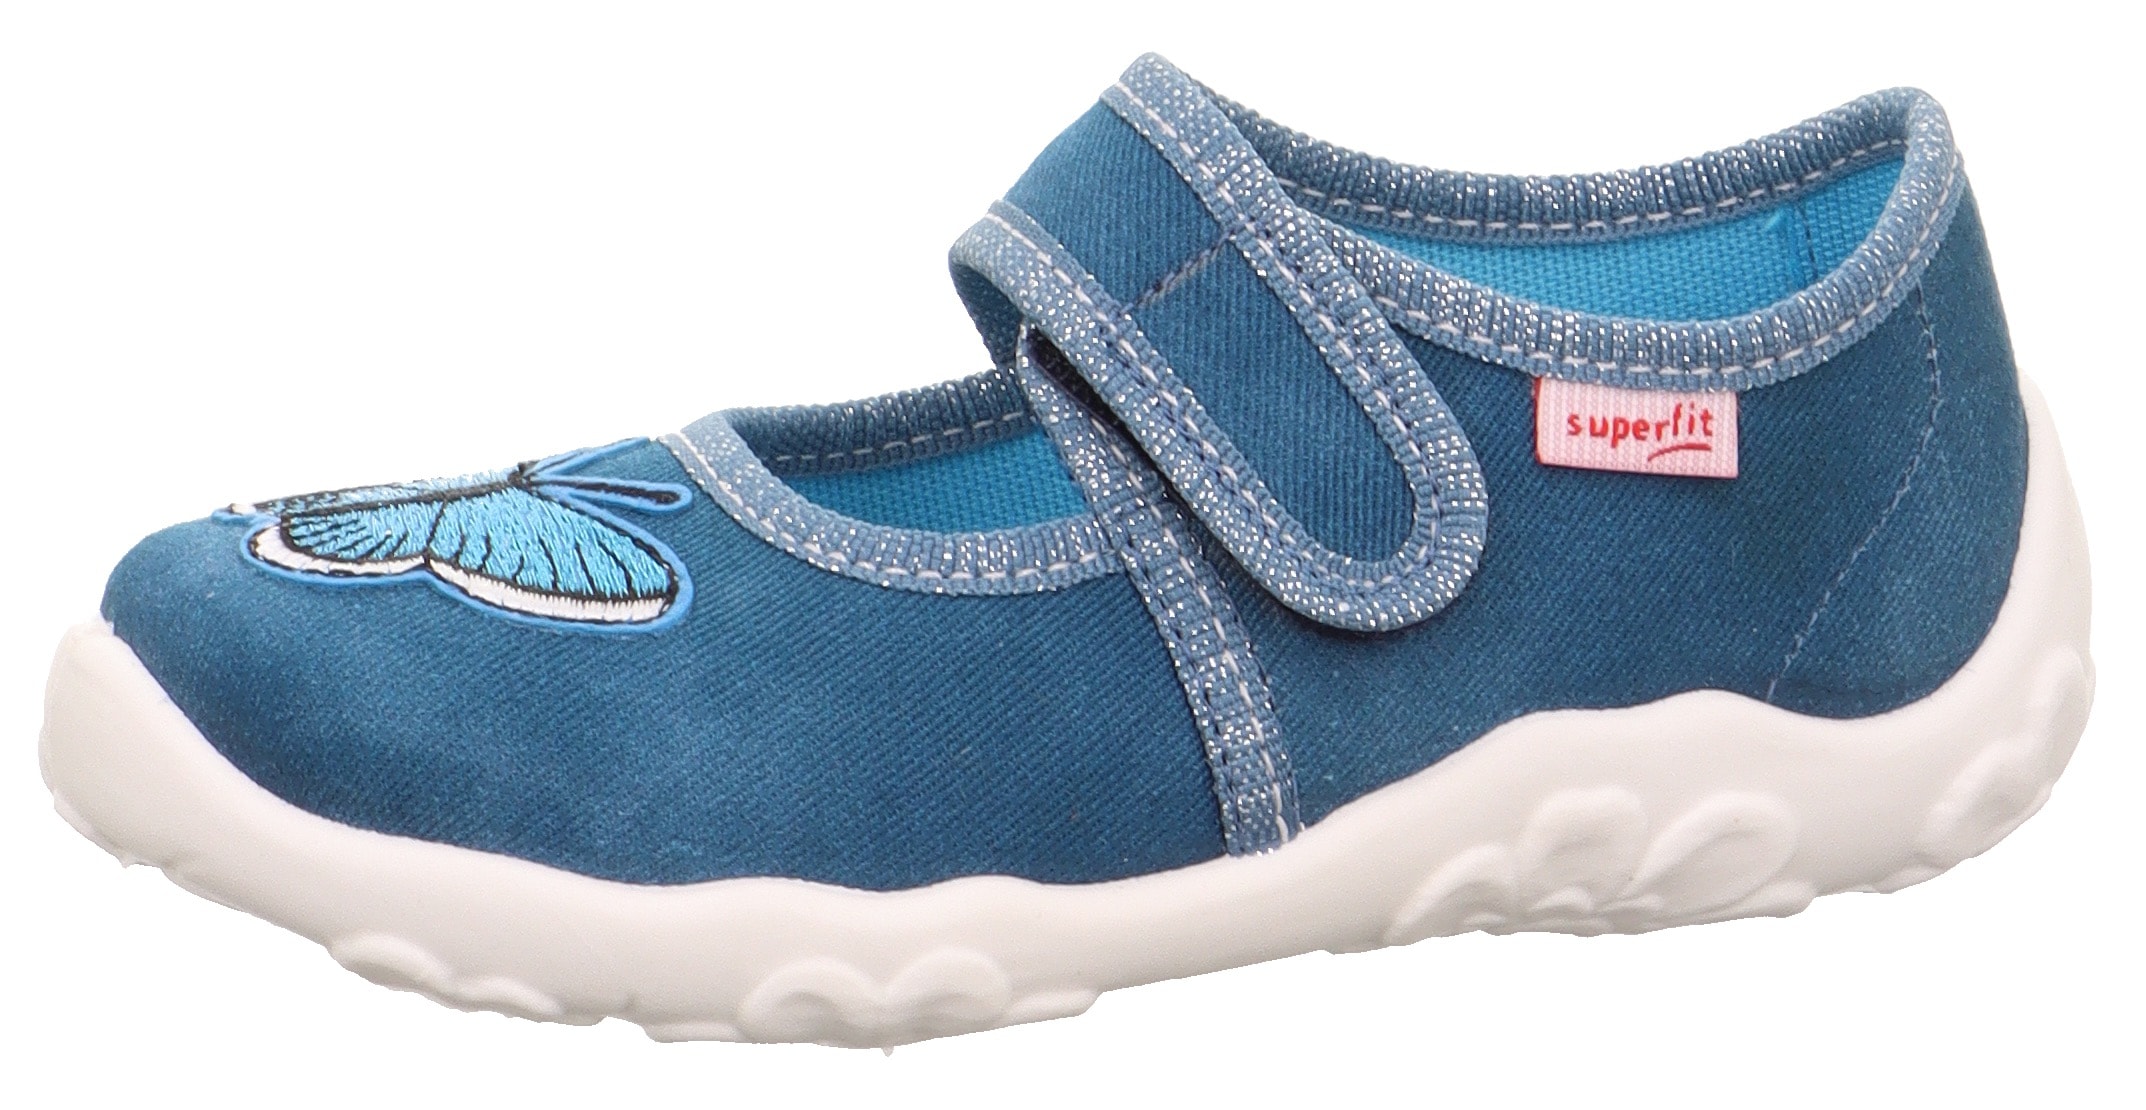 » Superfit | Online-Shop Superfit Schuhe BAUR für Kinder